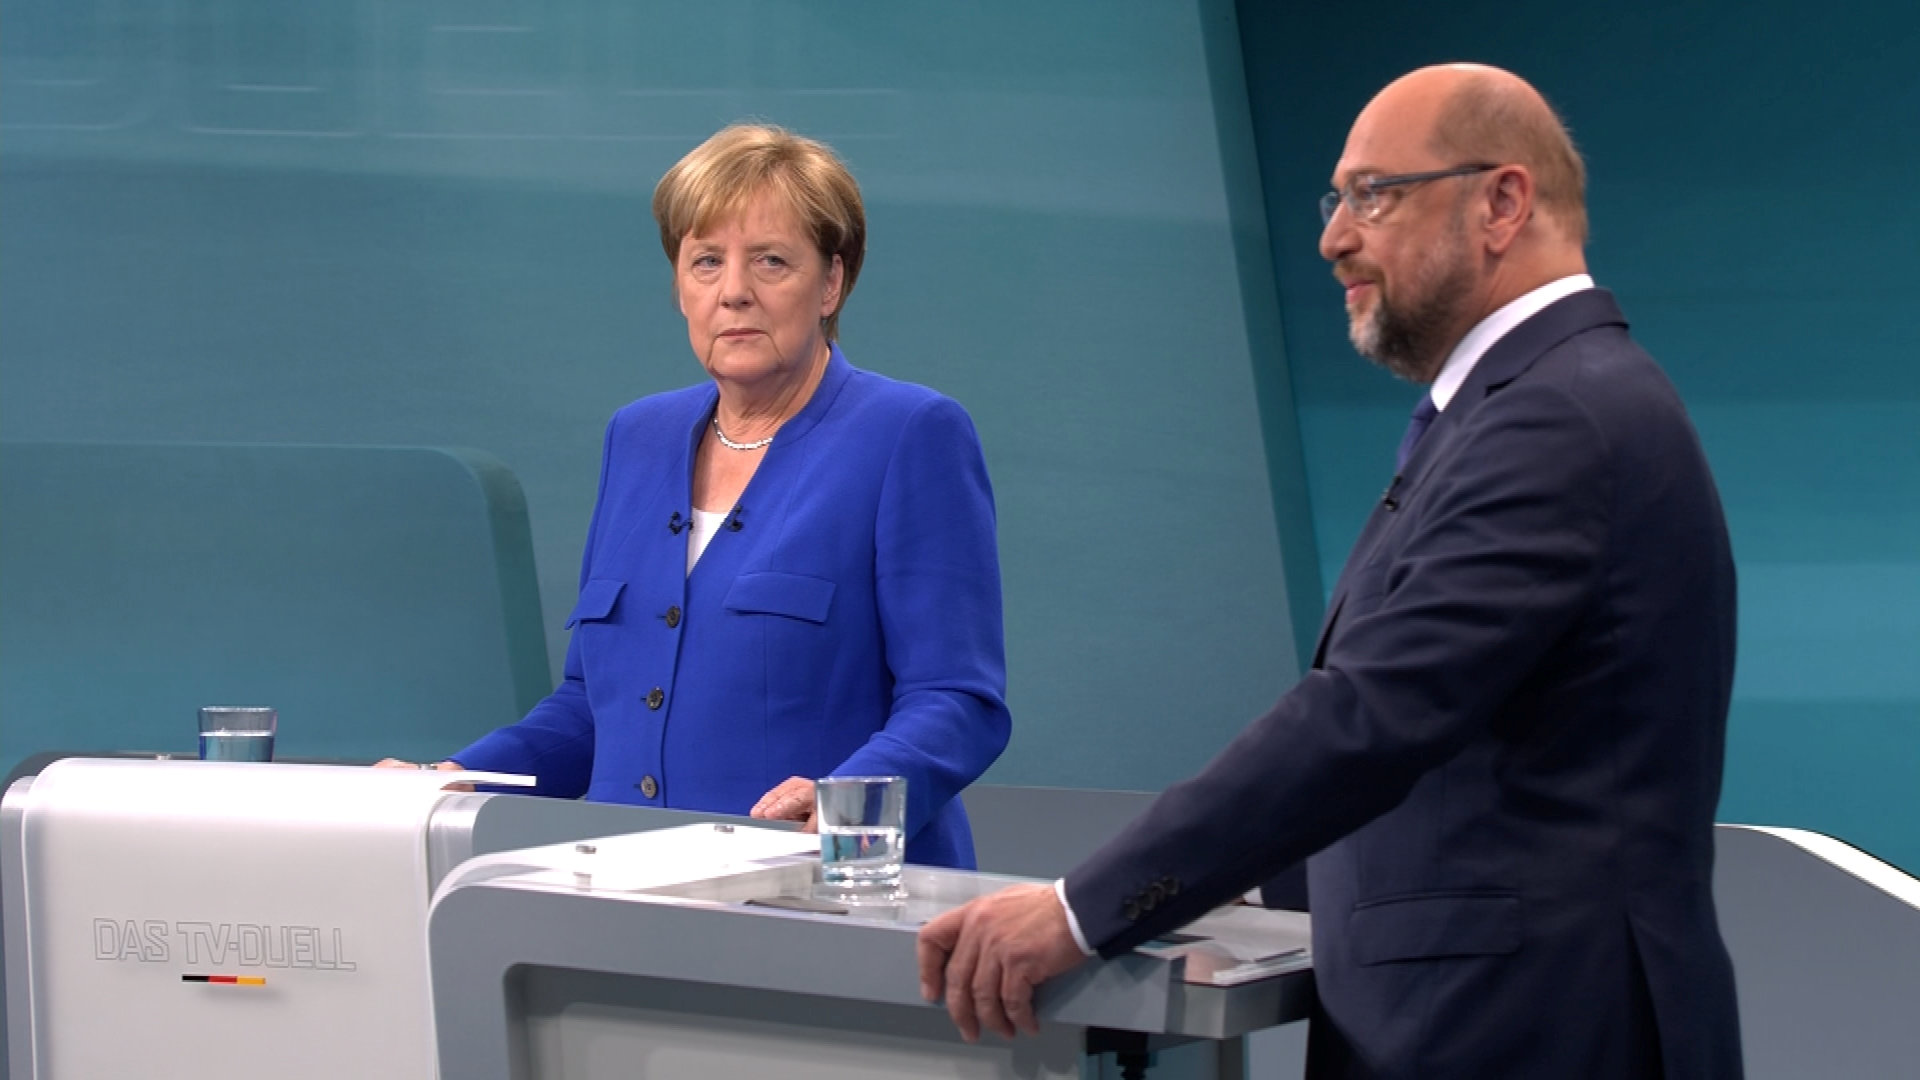 Το SPD πρoτείνει διαπραγματεύσεις με το CDU για συνασπισμό